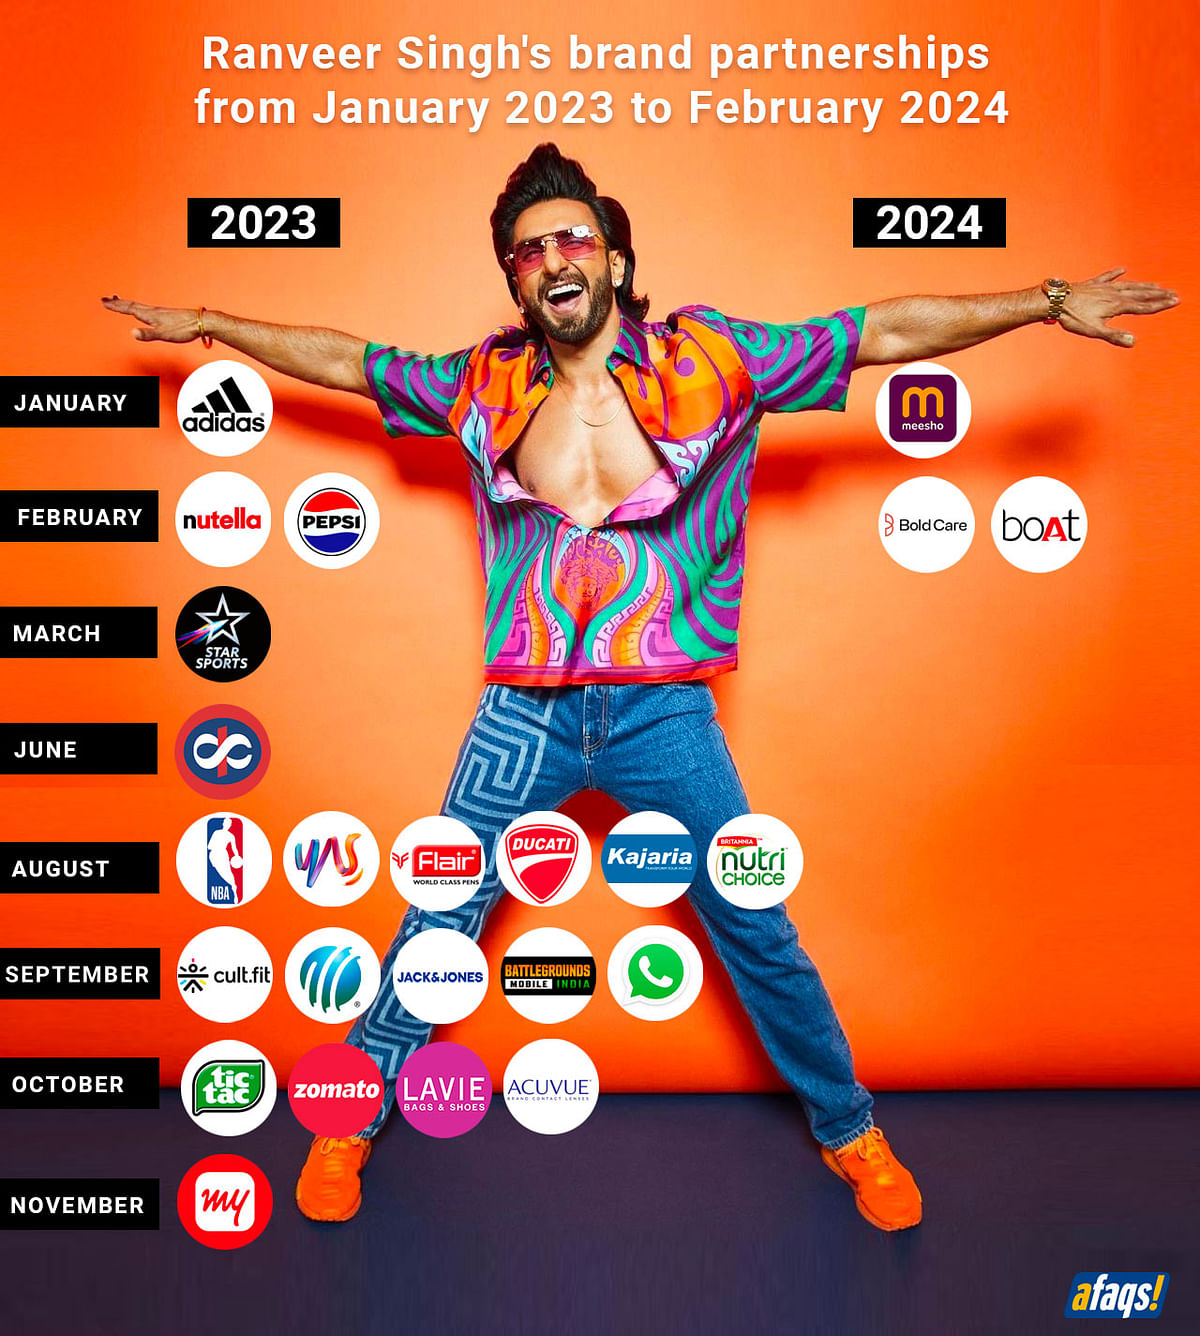 Ranveer Singh's brand partnerships from 2023-2024